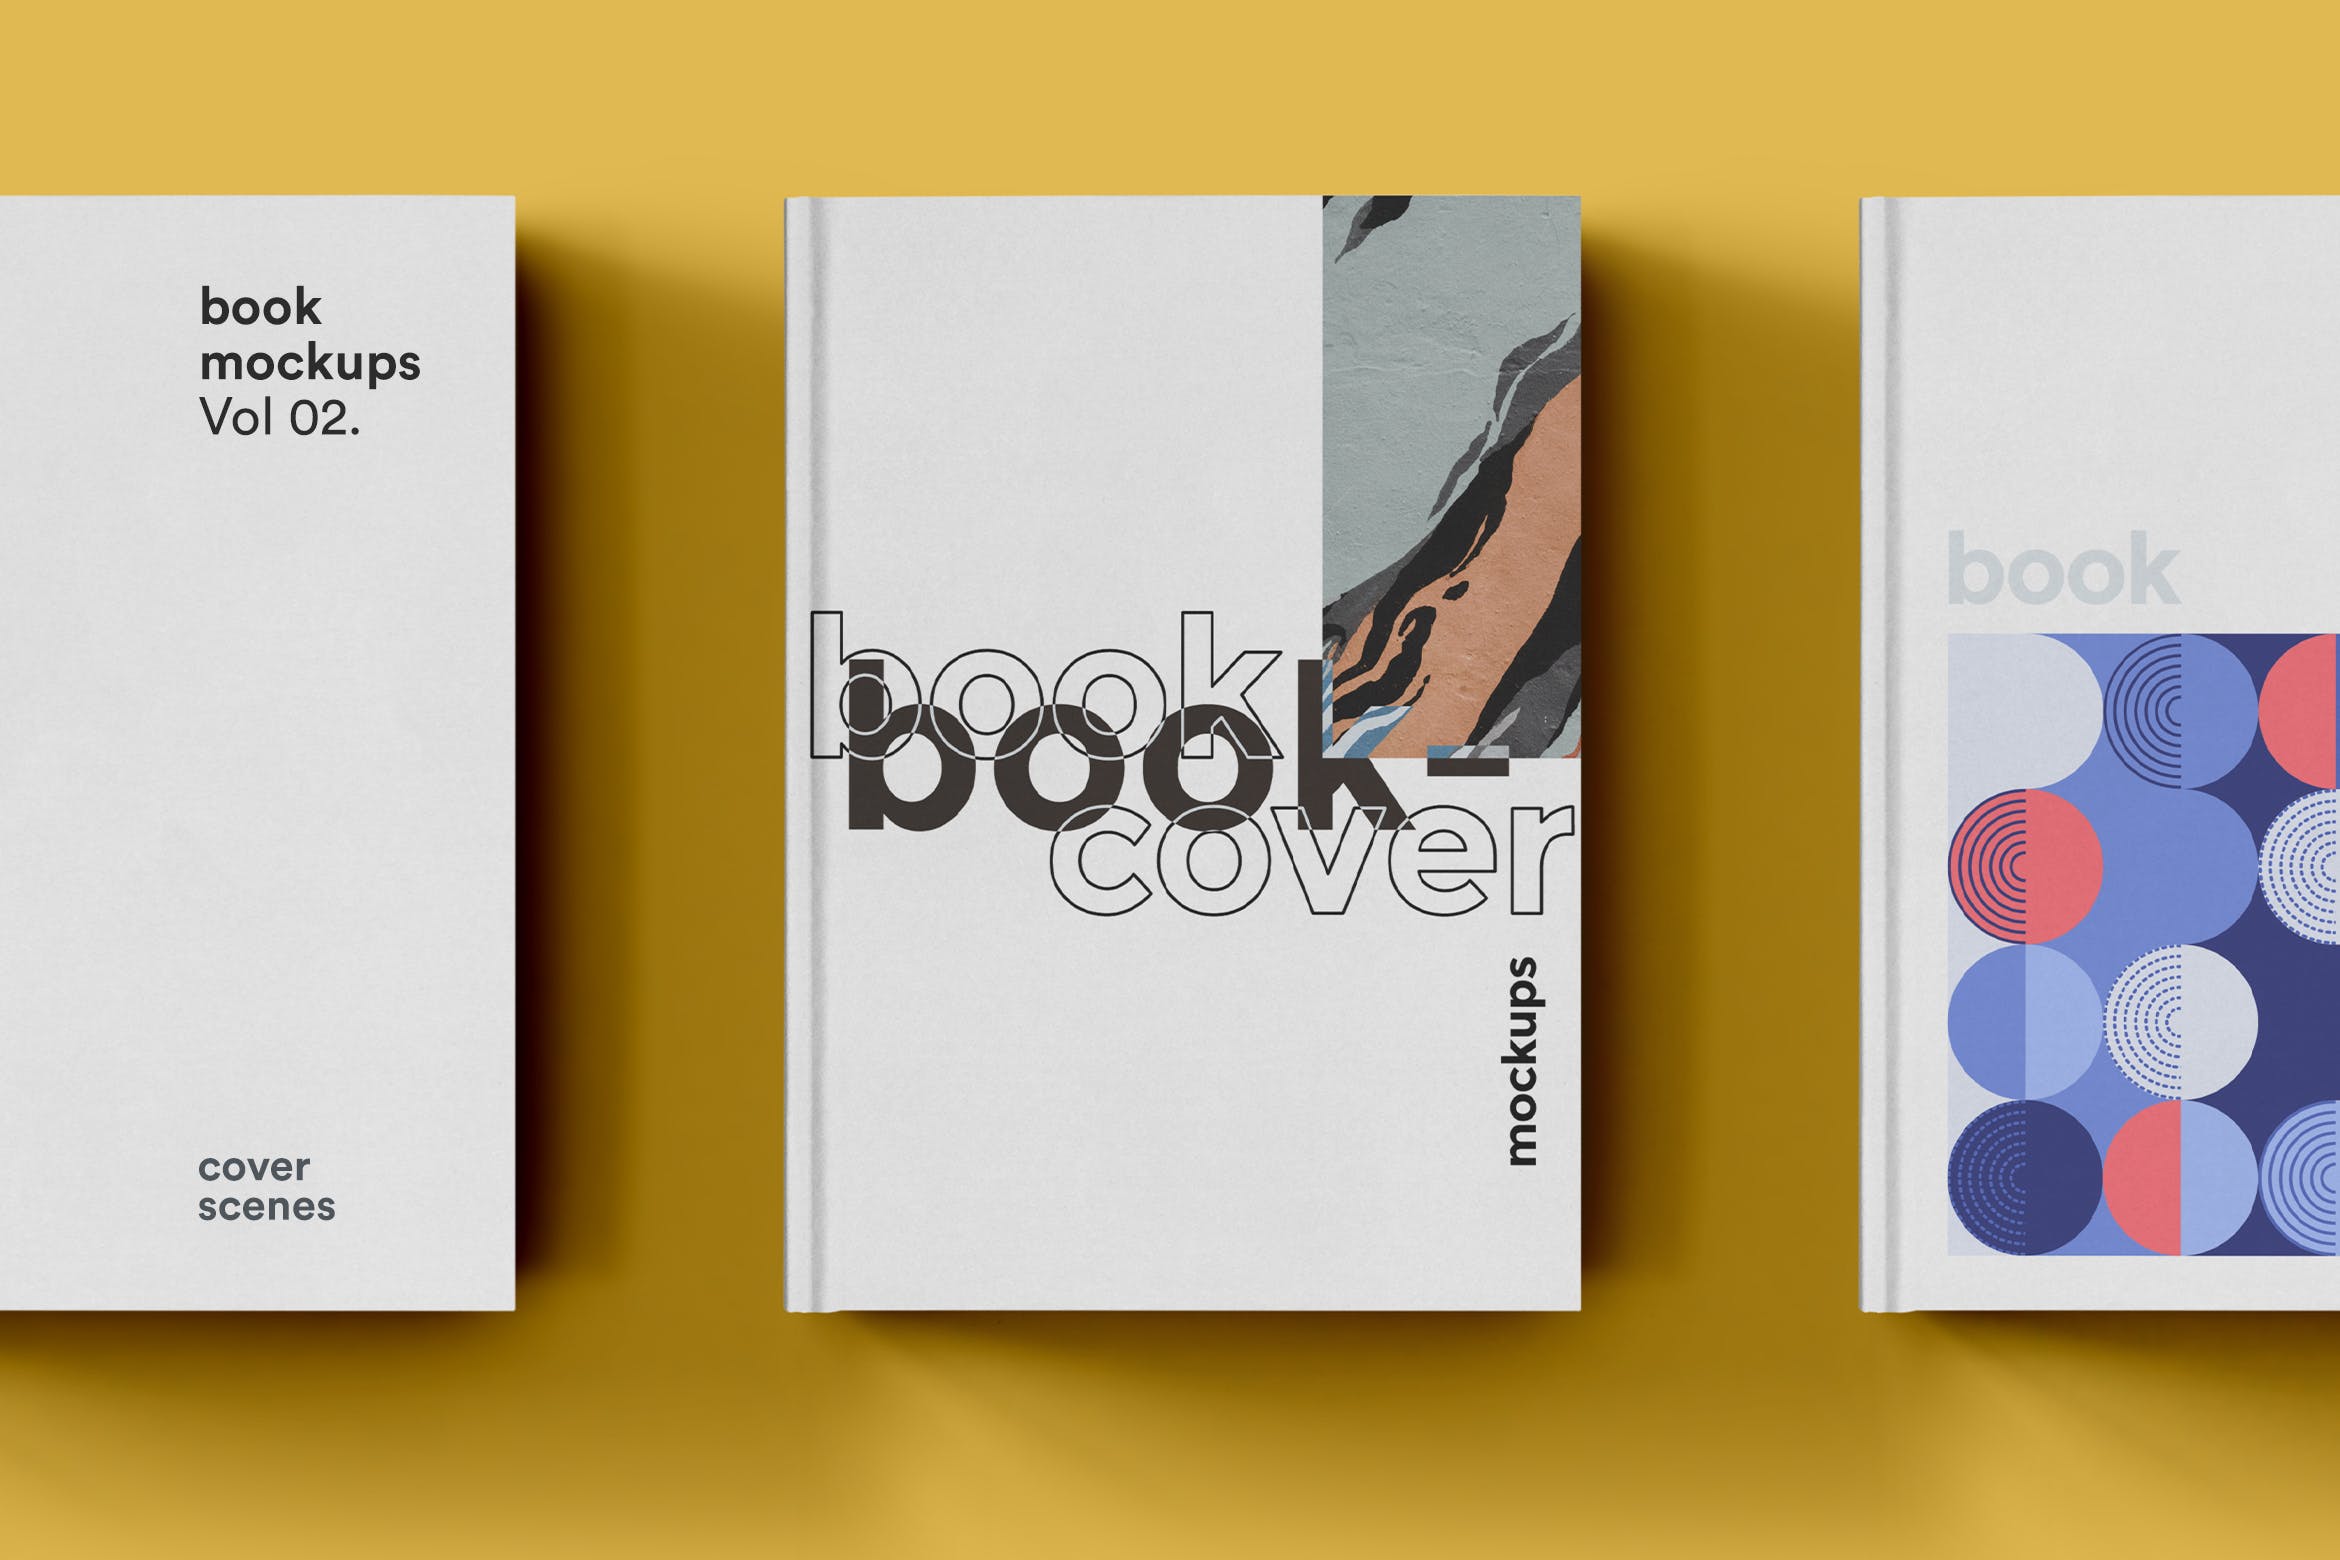 硬封设计图书封面印刷效果图样机第一素材精选 Book Cover Mockup插图